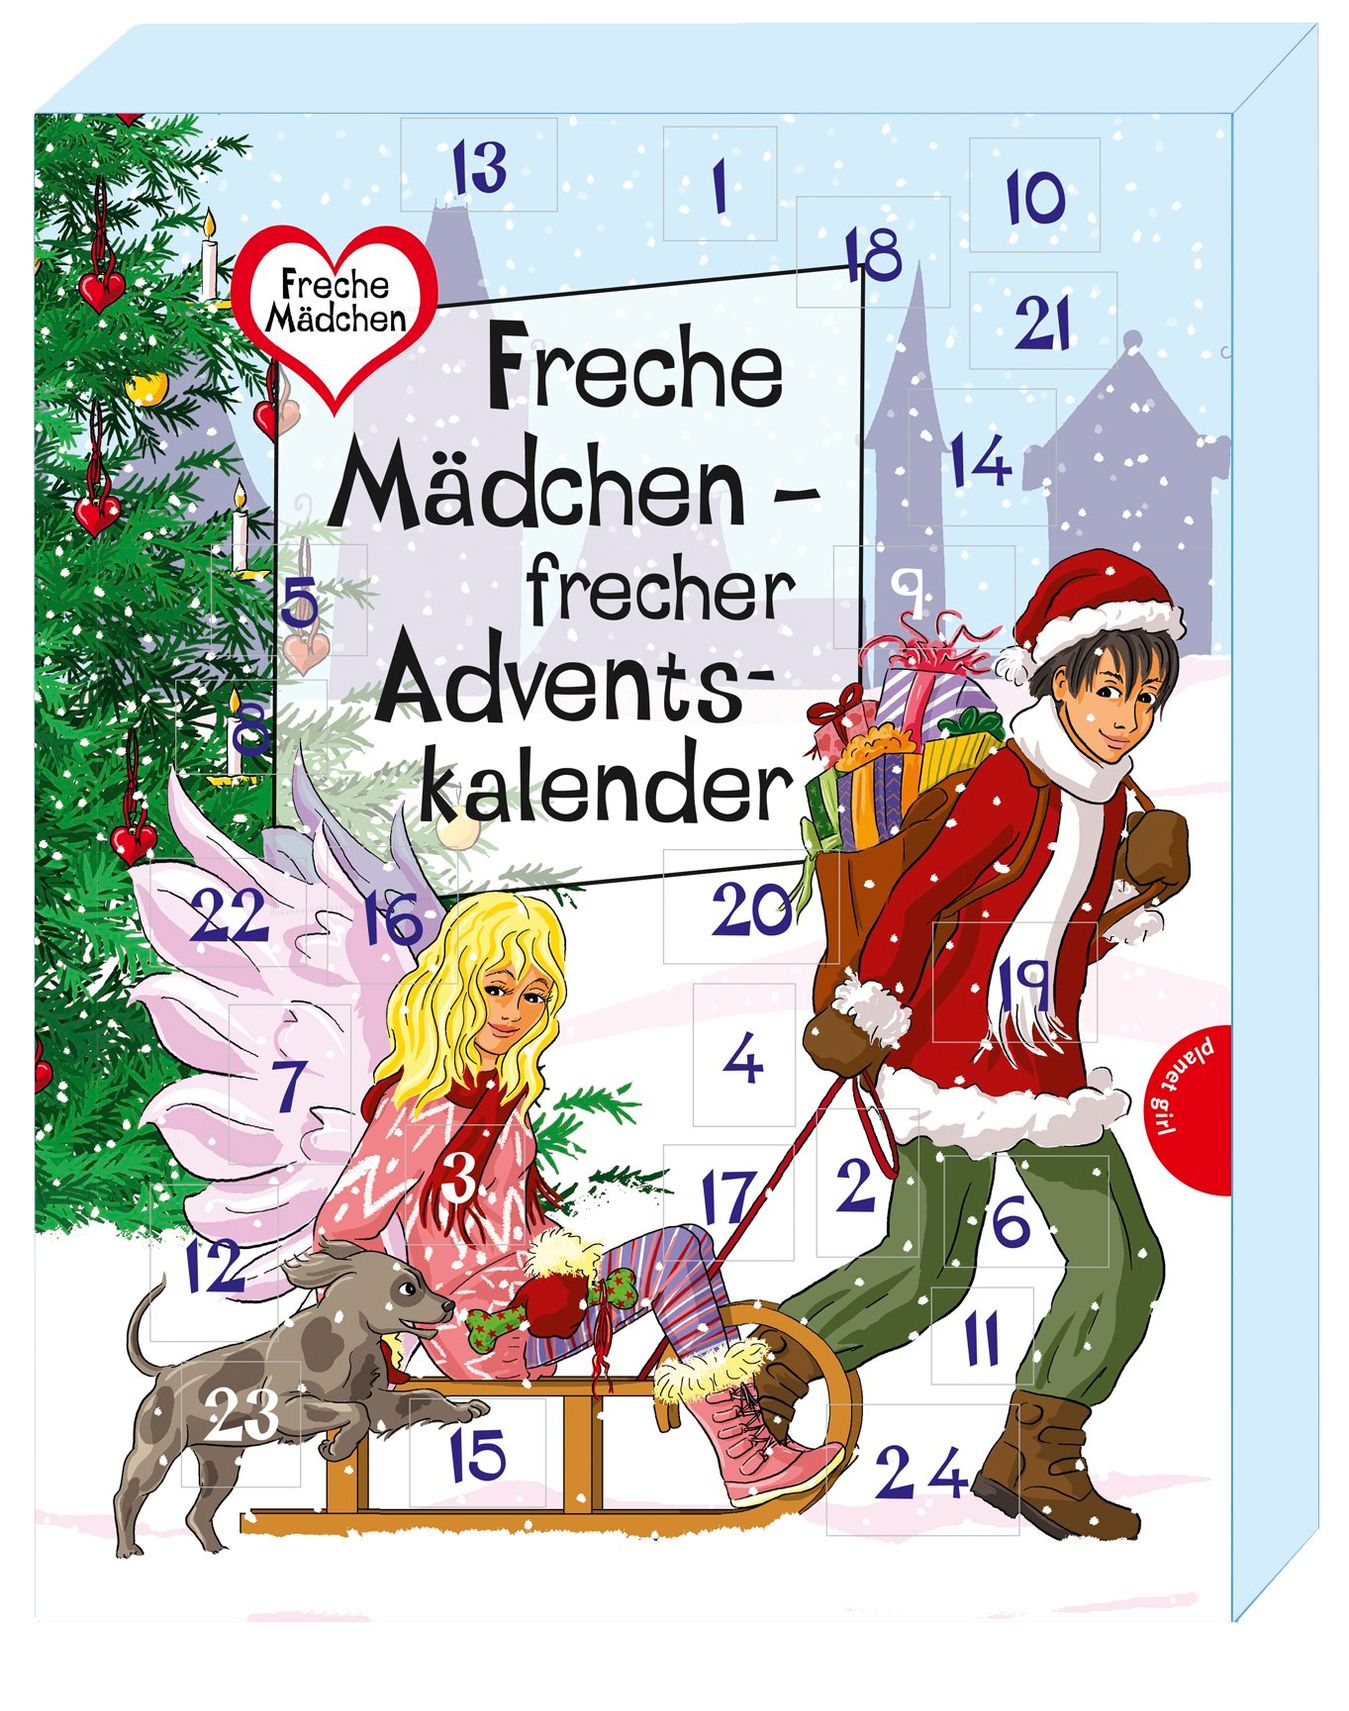 Freche Mädchen - frecher Adventskalender Buch - Weltbild.ch